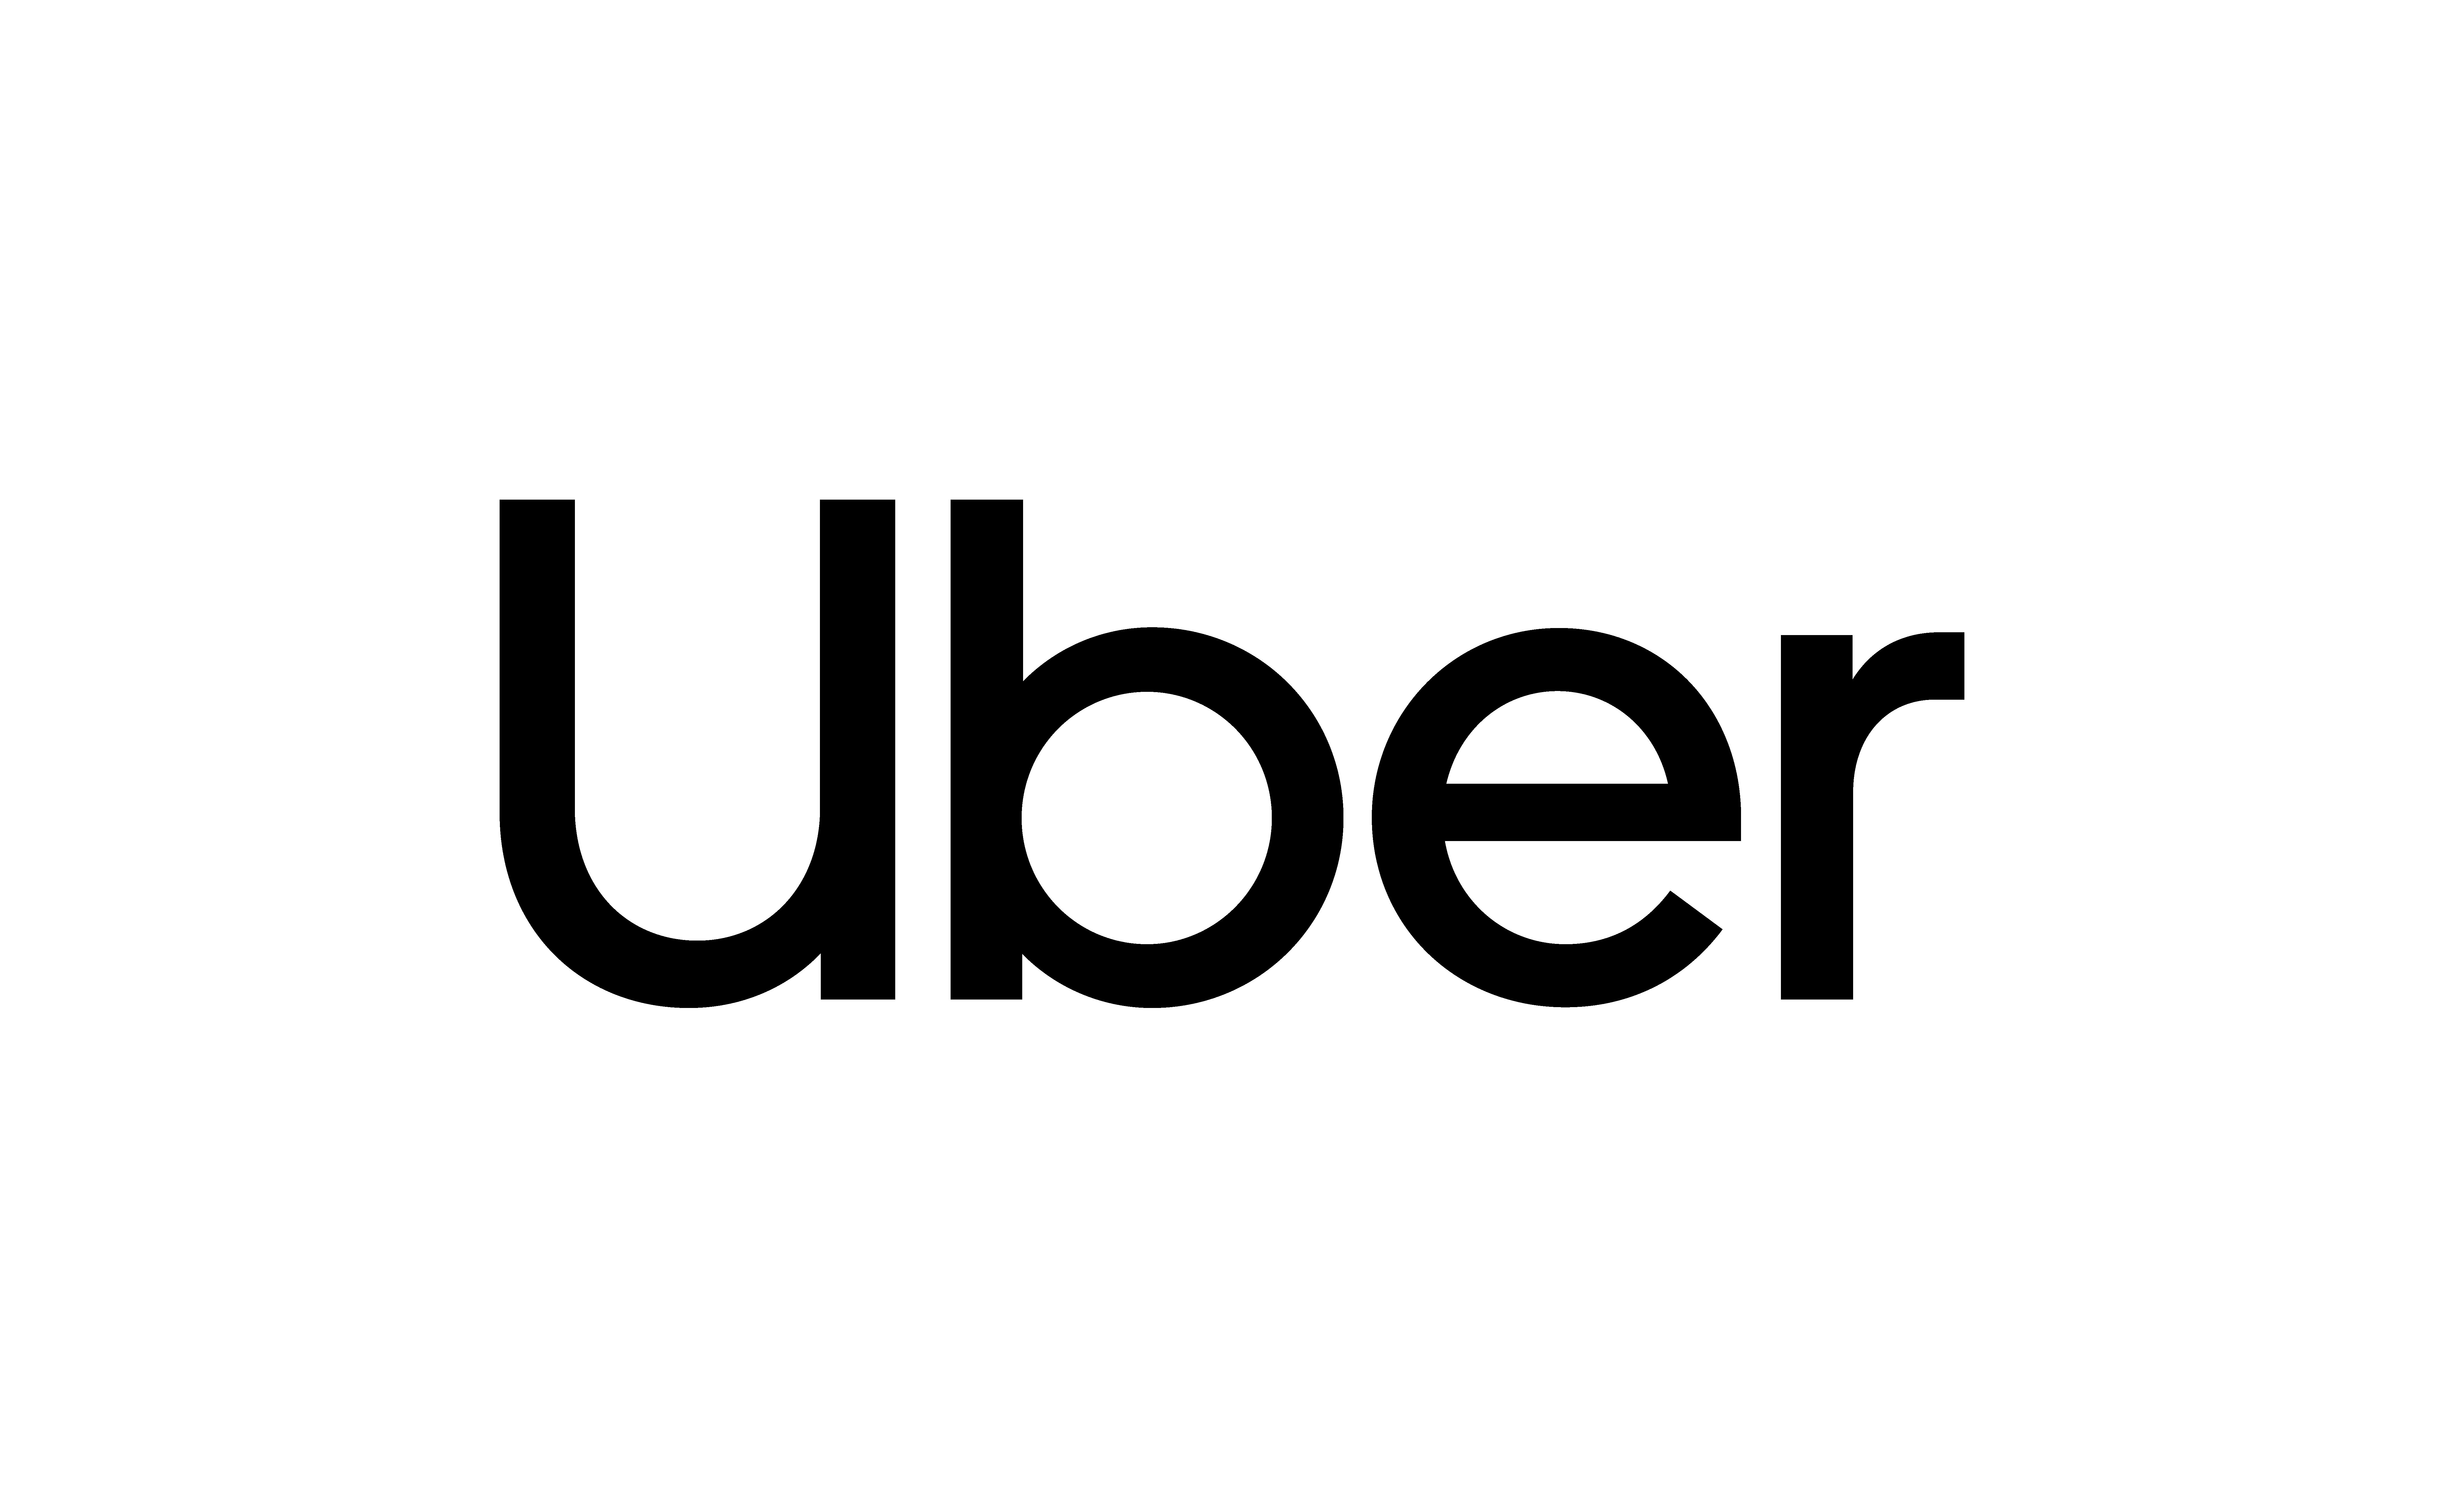 Nadawanie przesyłek, rezerwowanie przejazdu i więcej możliwości w aplikacji - Uber prezentuje nowości